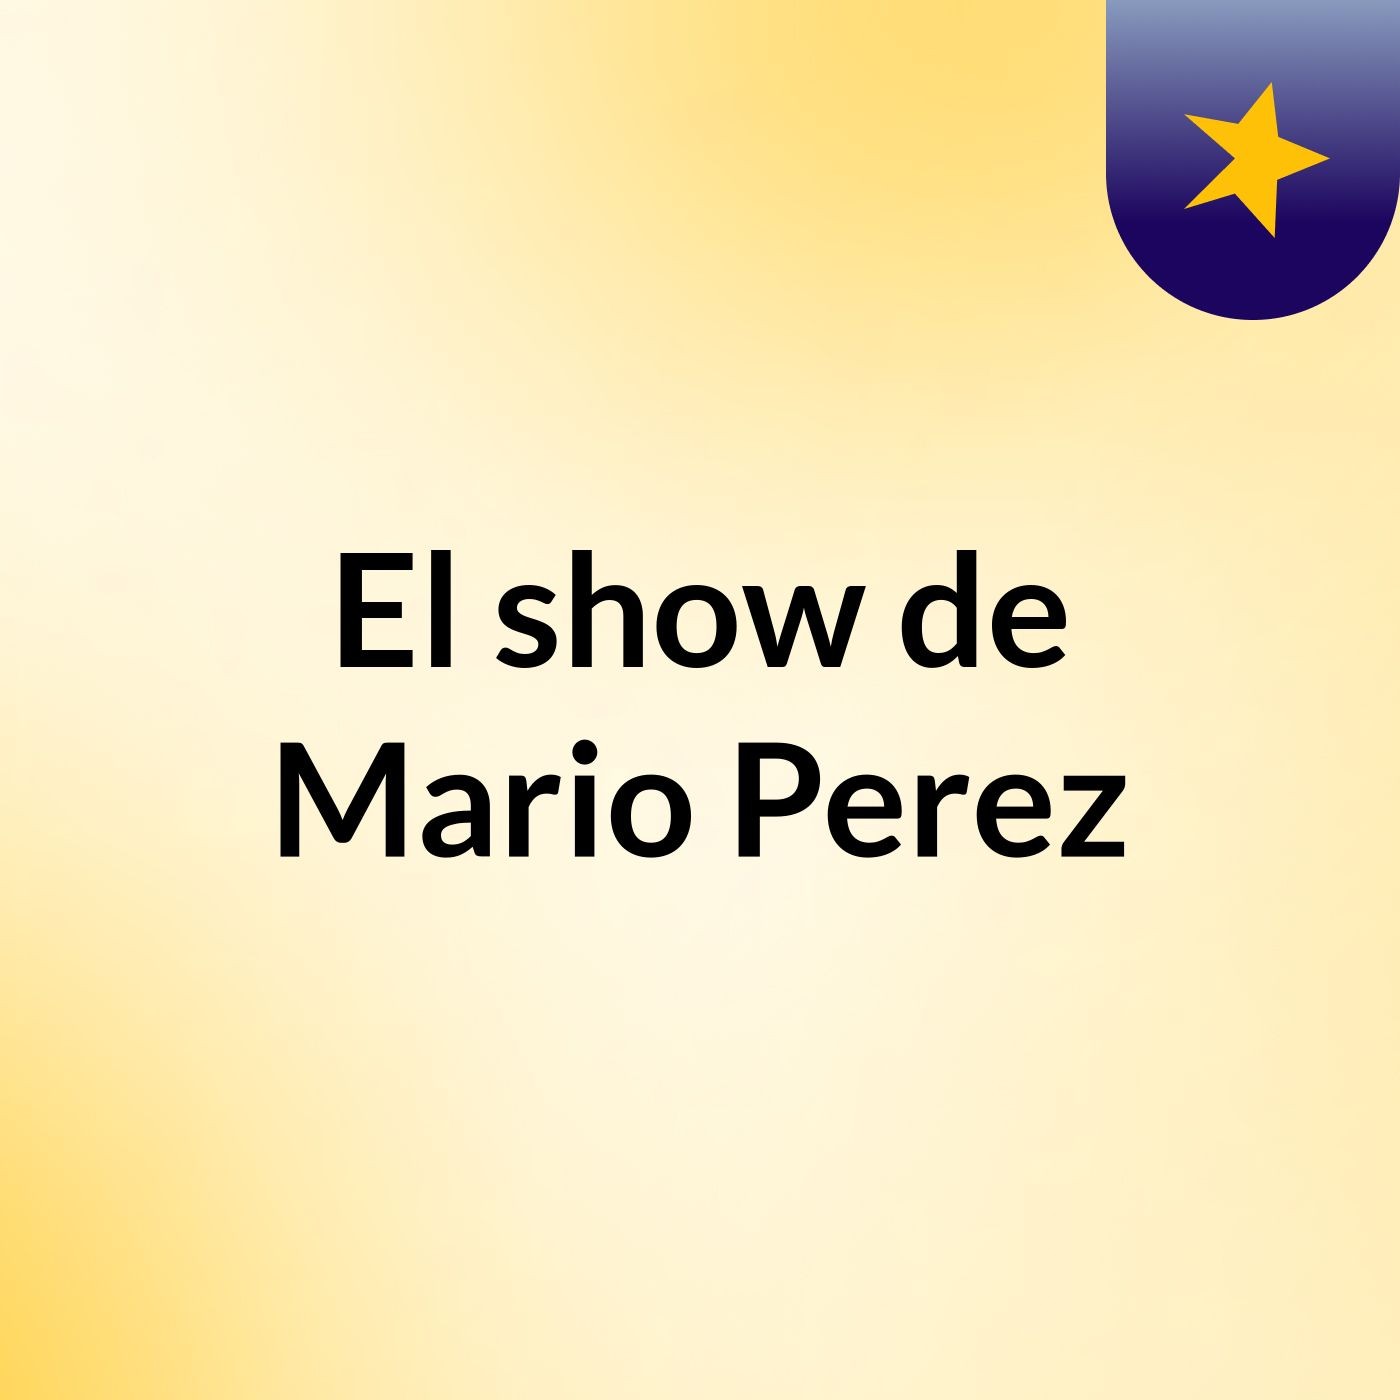 El show de Mario Perez